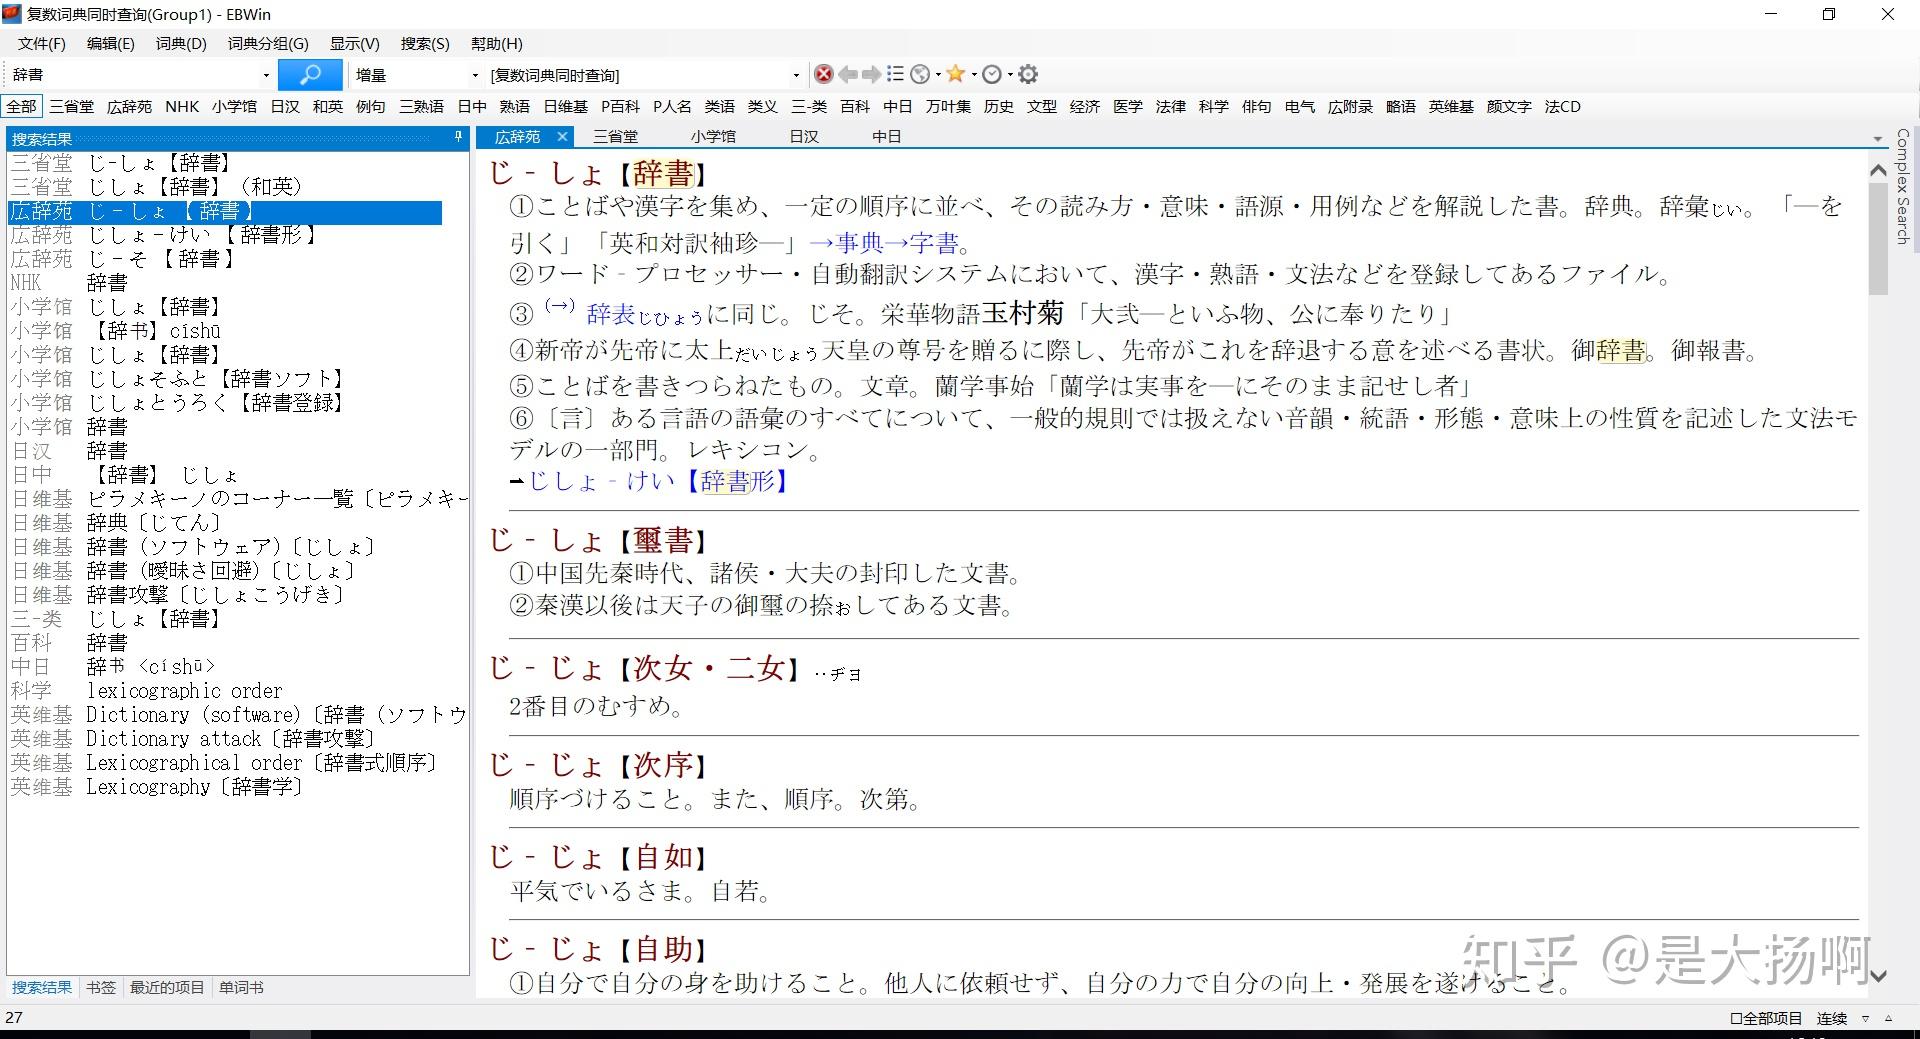 高一准备学日语,请问初学用什么日语词典